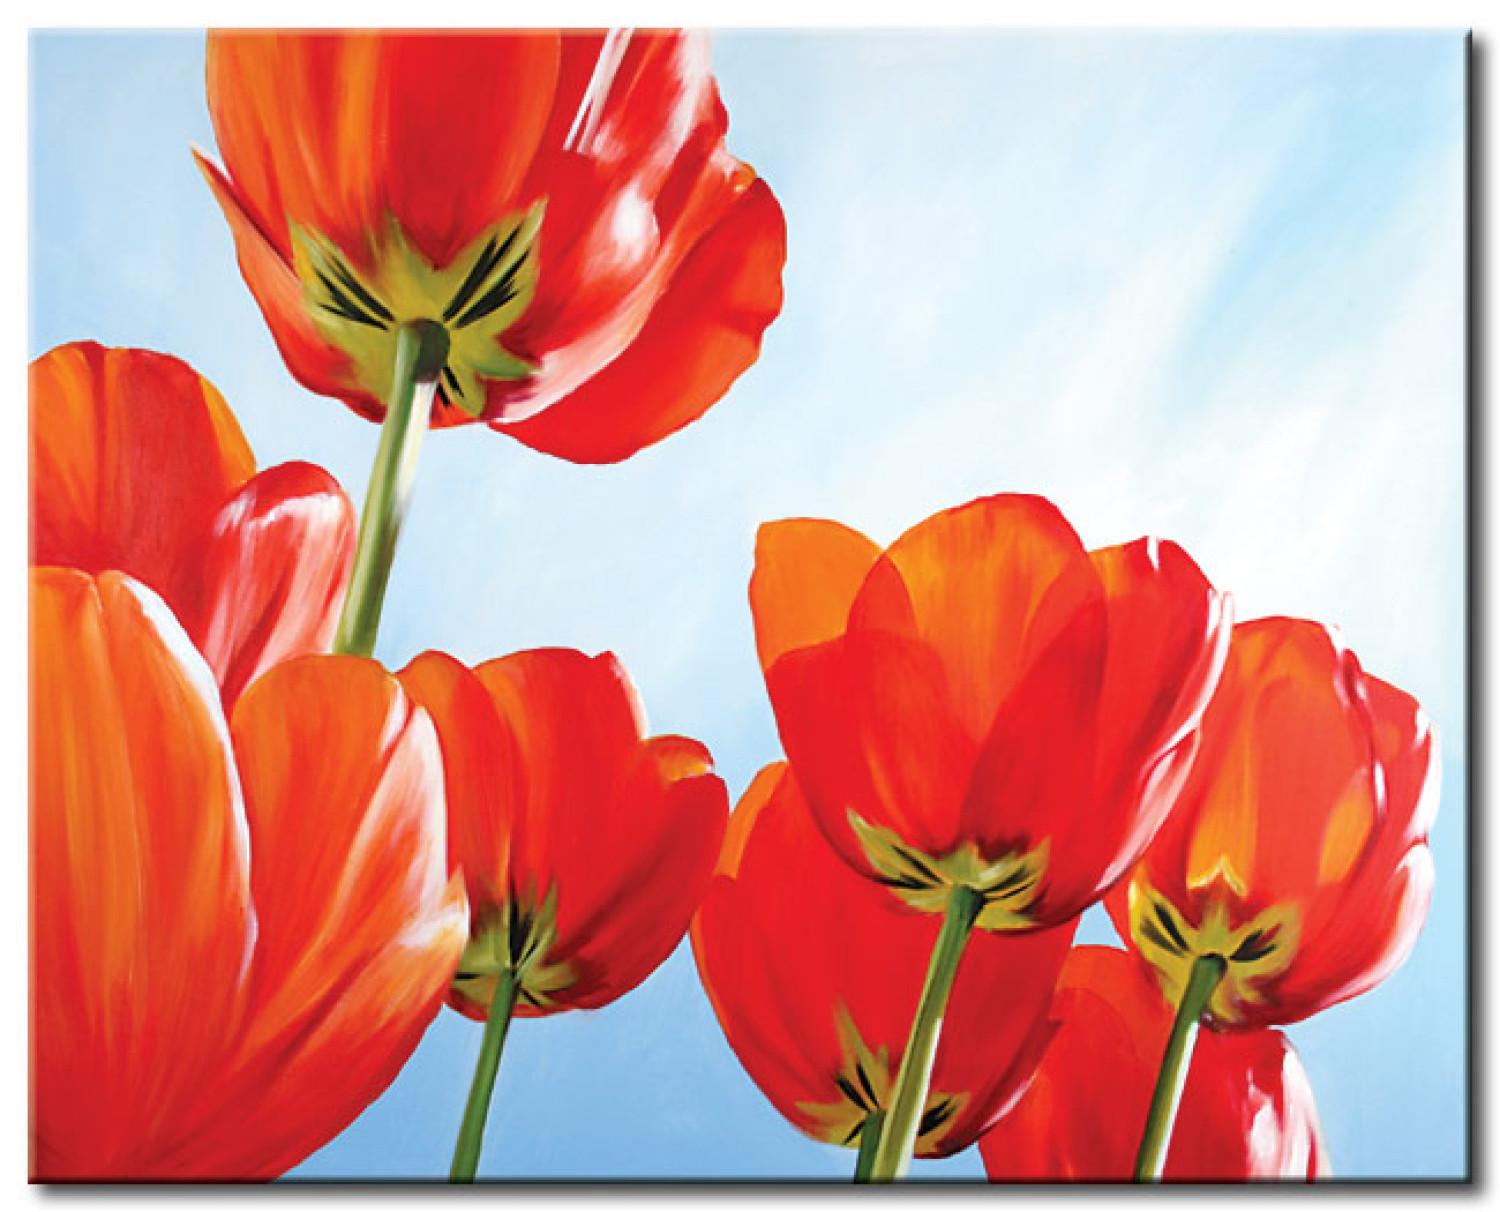 Cuadro decorativo Tulipanes (1 pieza) - flores rojas contra cielo azul